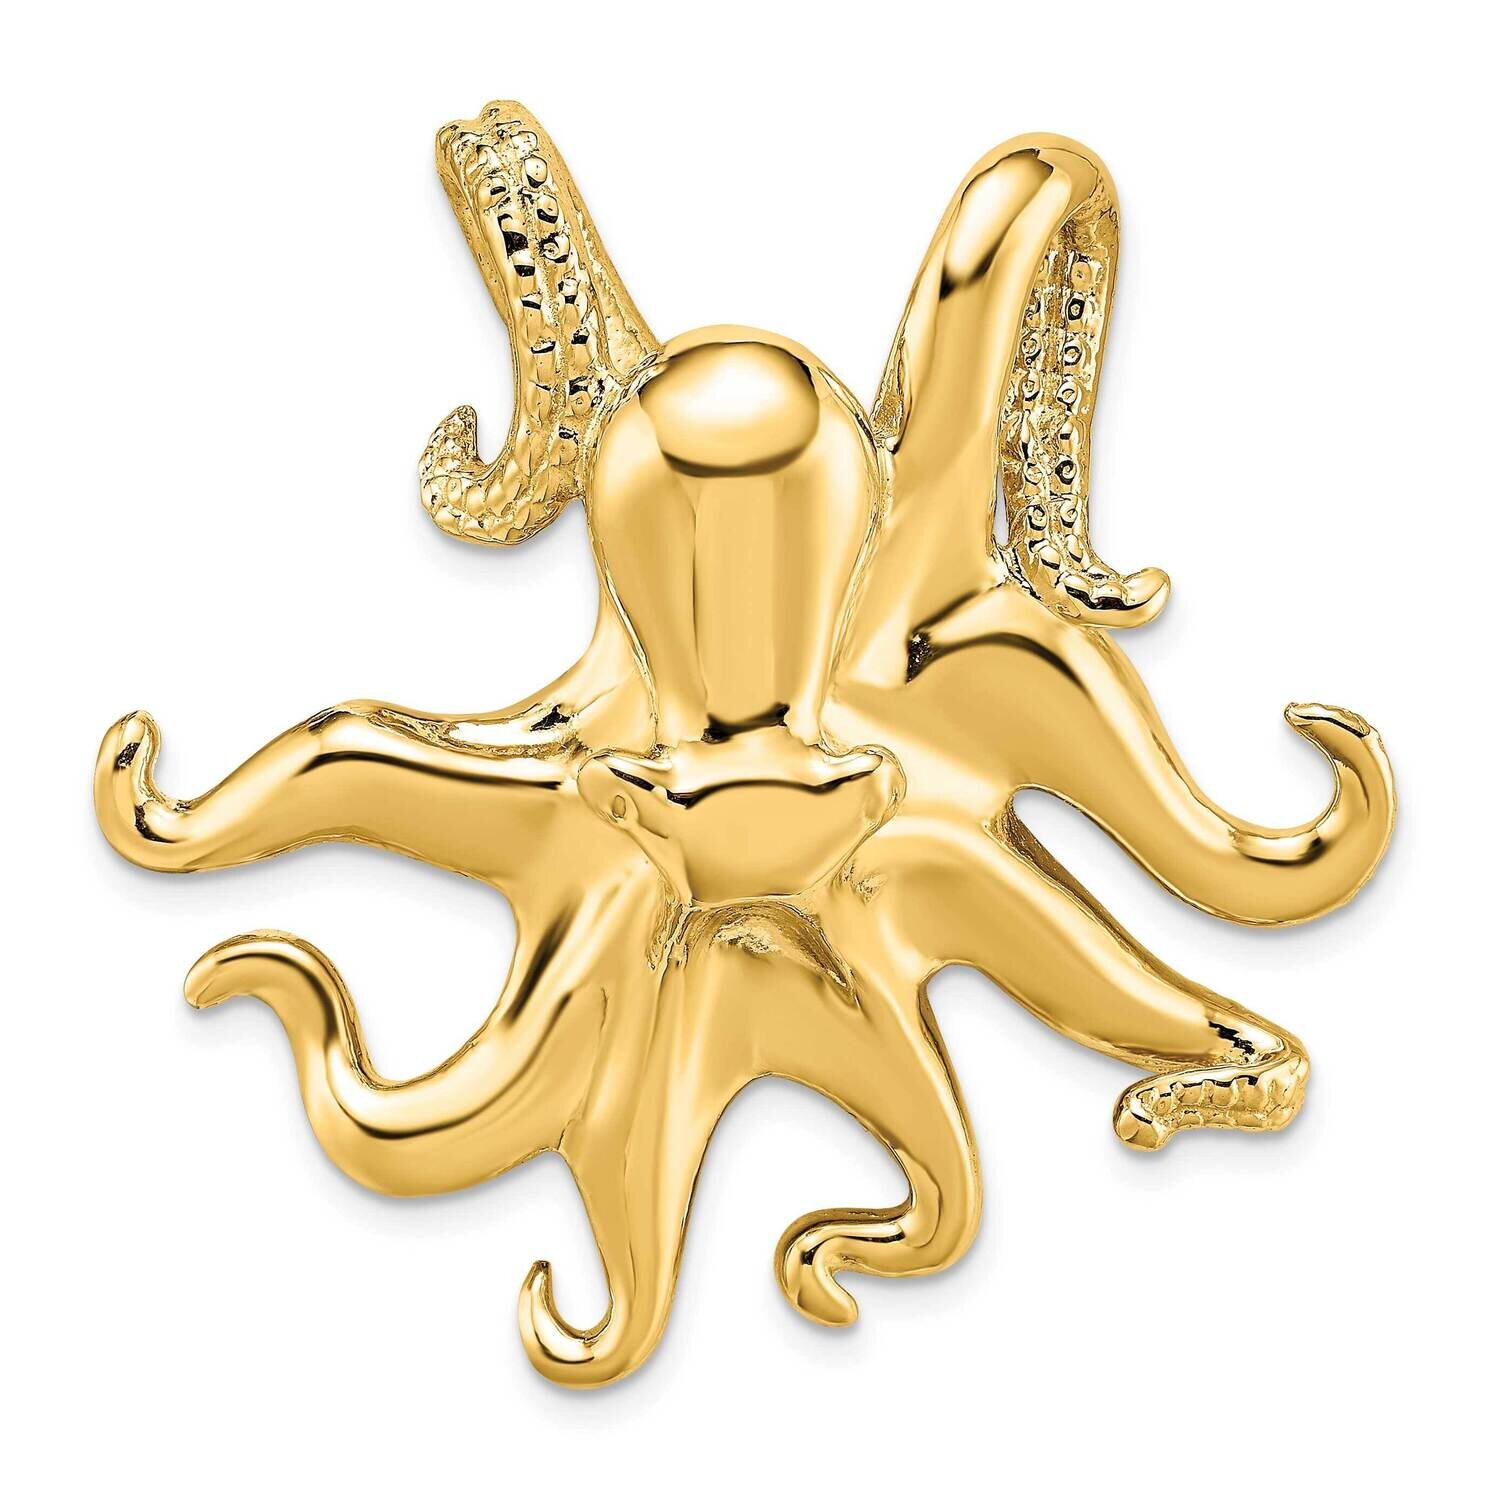 Underside Octopus Slide 14k Gold Polished & Textured SL589